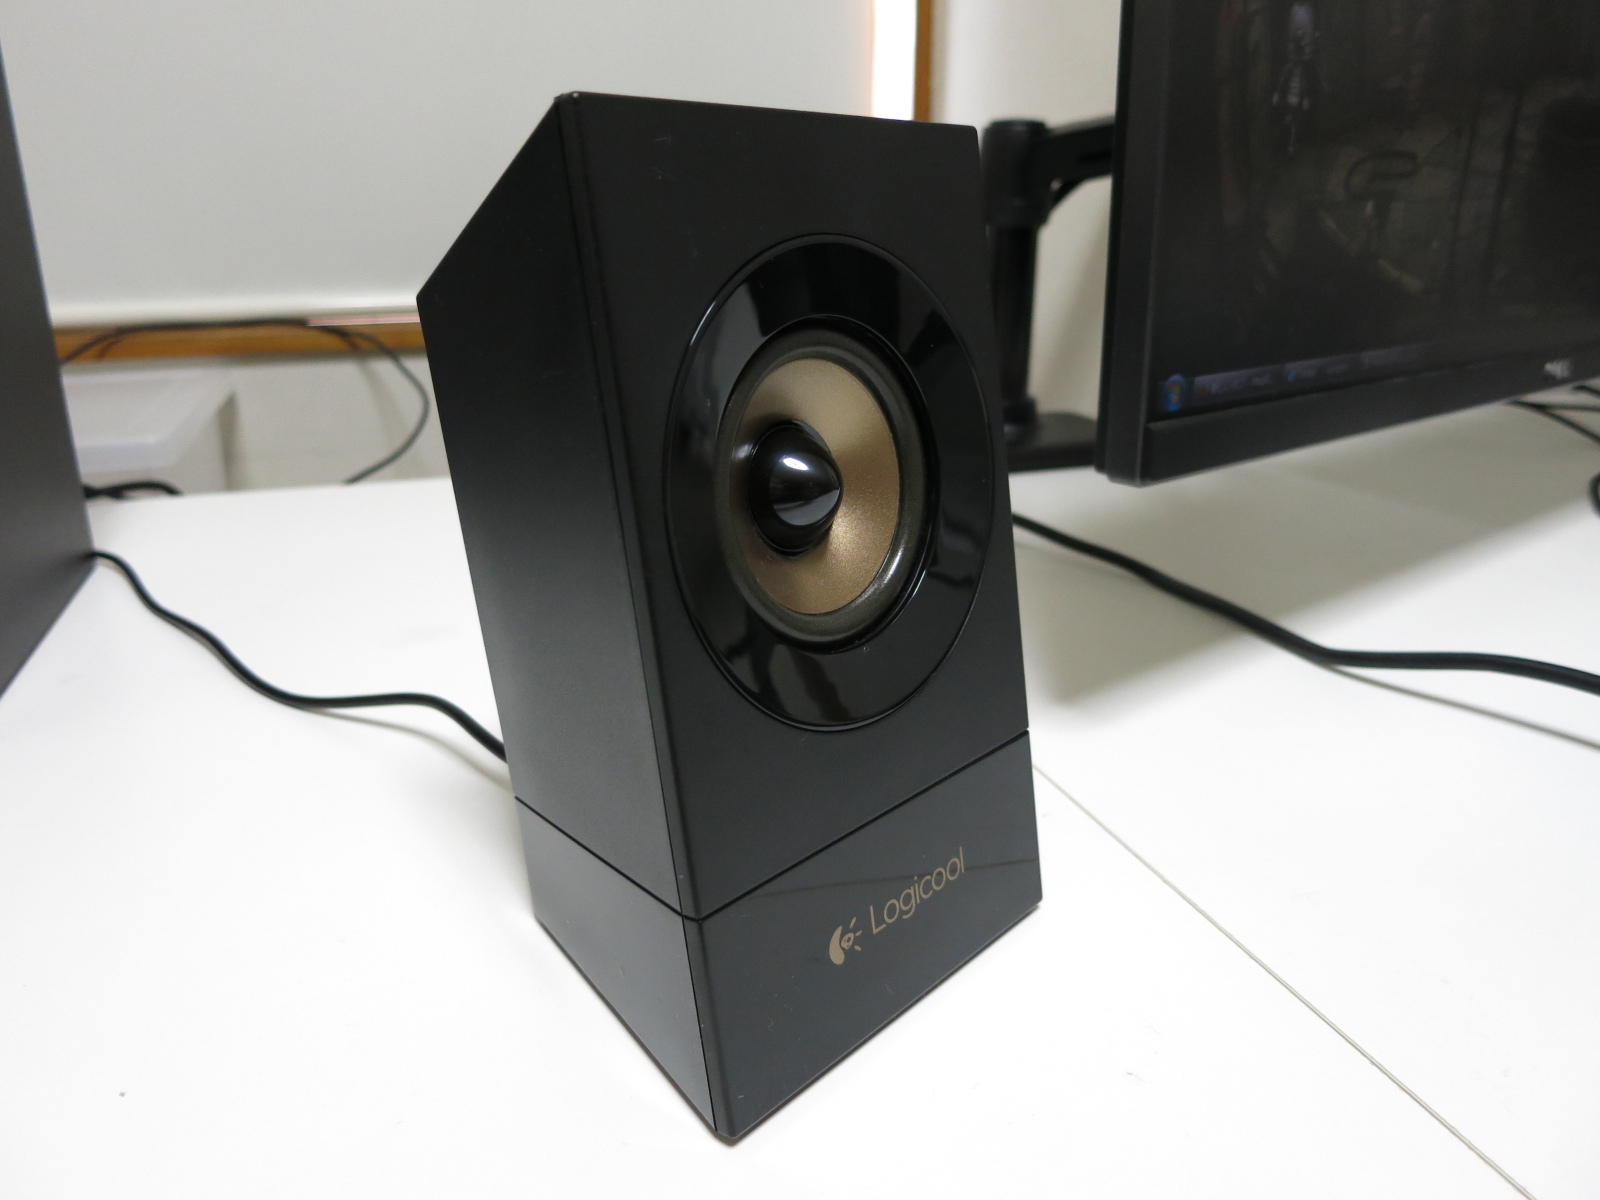 ロジクール 『Z533 Multimedia Speaker System』 レビュー ～使用感～ - ヲチモノ